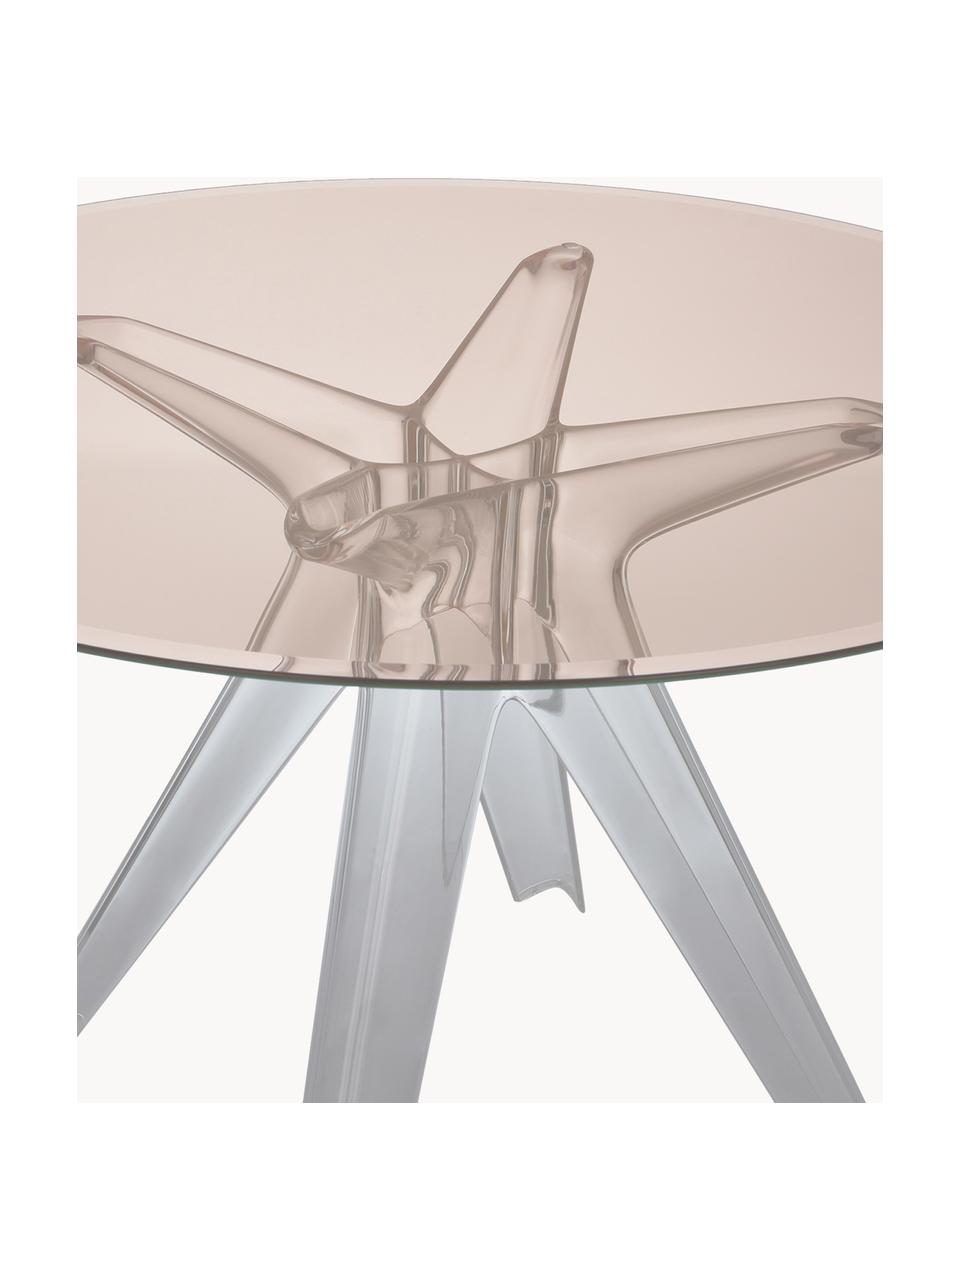 Okrúhly stôl Sir Gio, Ø 120 cm, Béžová, priehľadná, Ø 120 cm